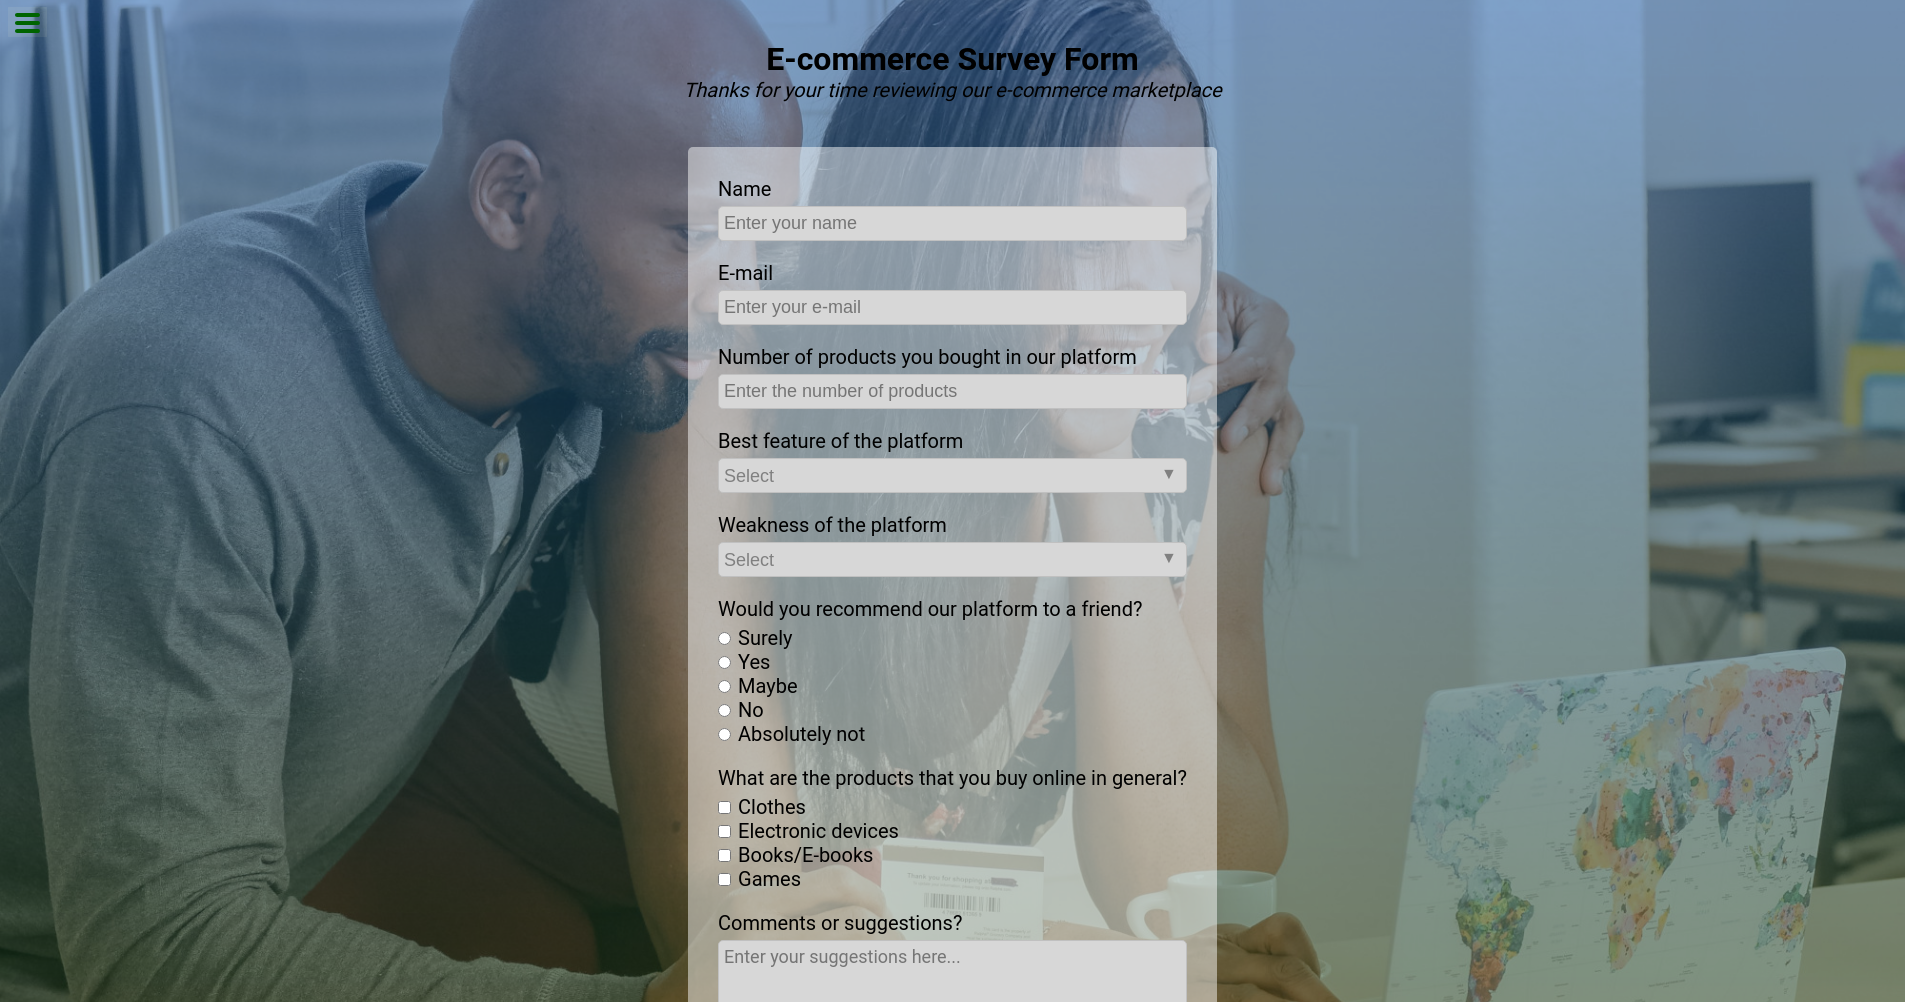 Survey Form Project